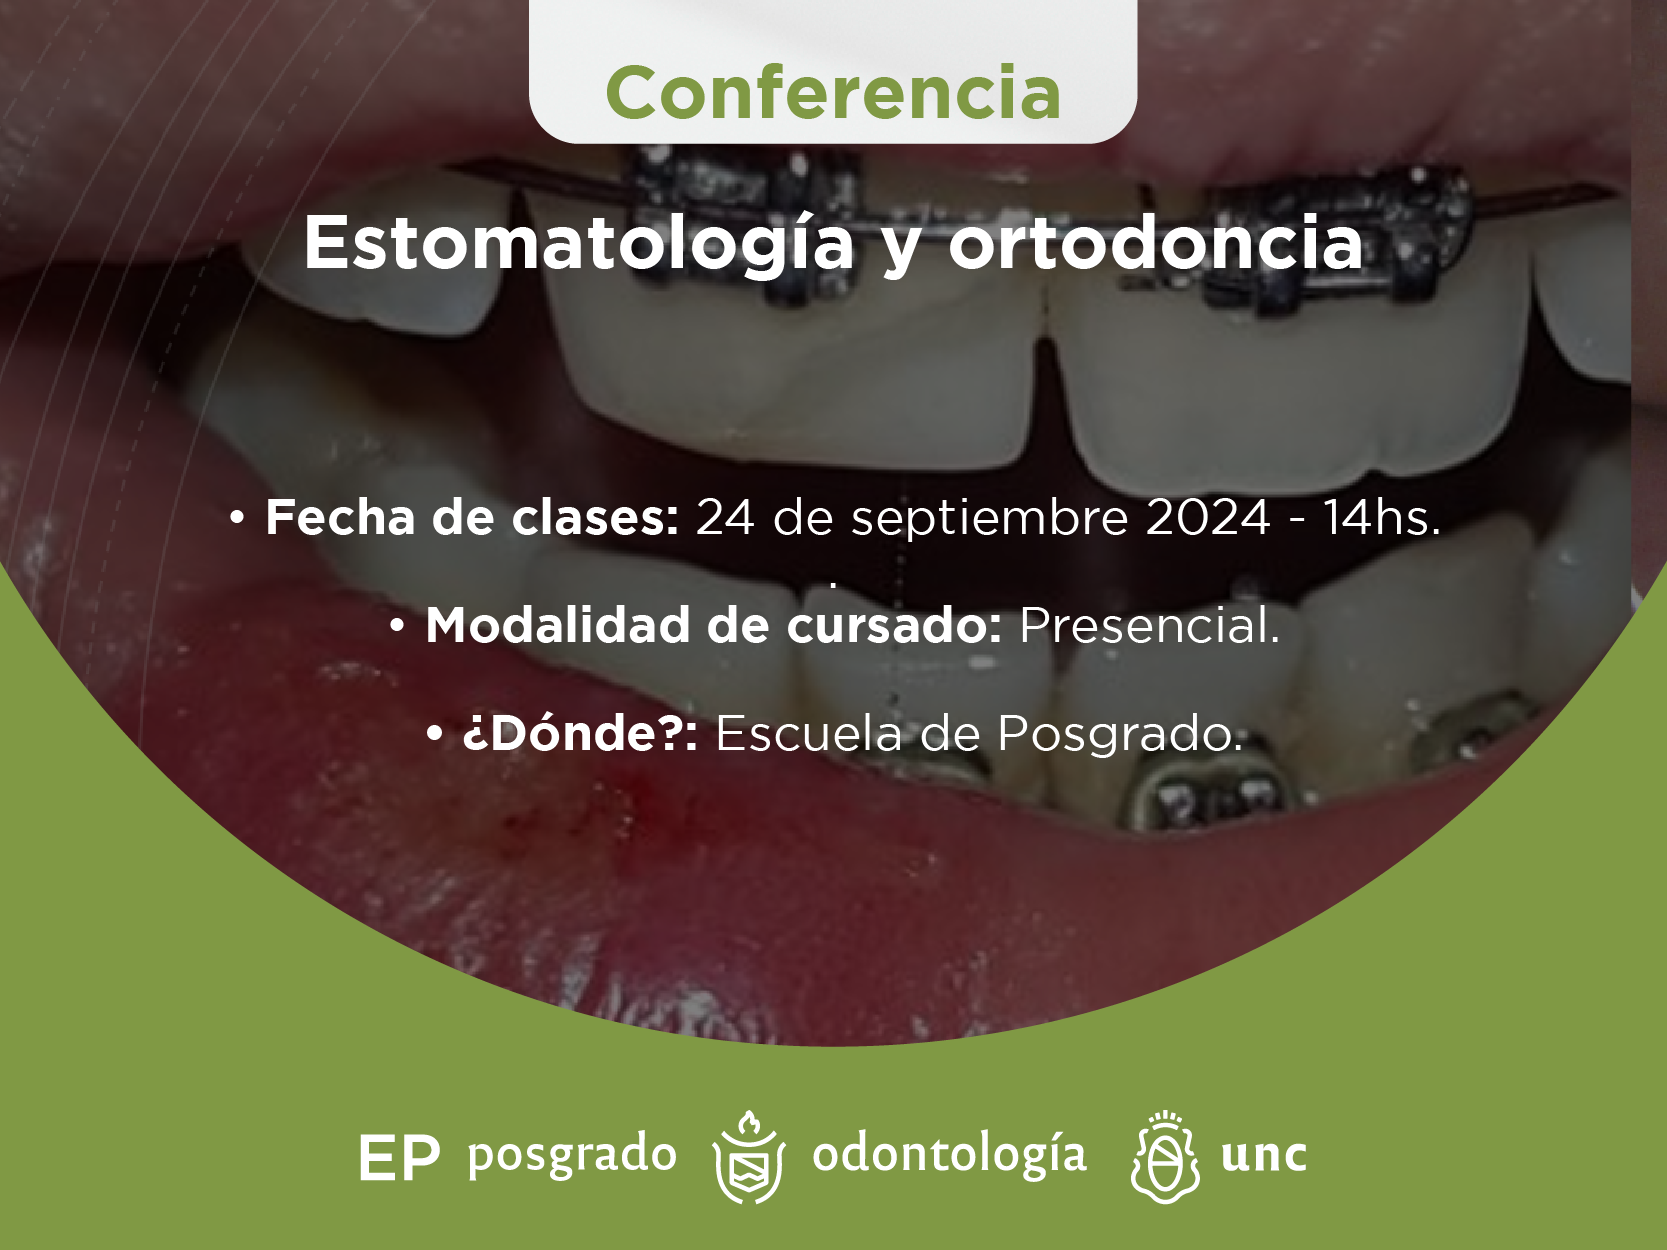 Estomatología y ortodoncia.